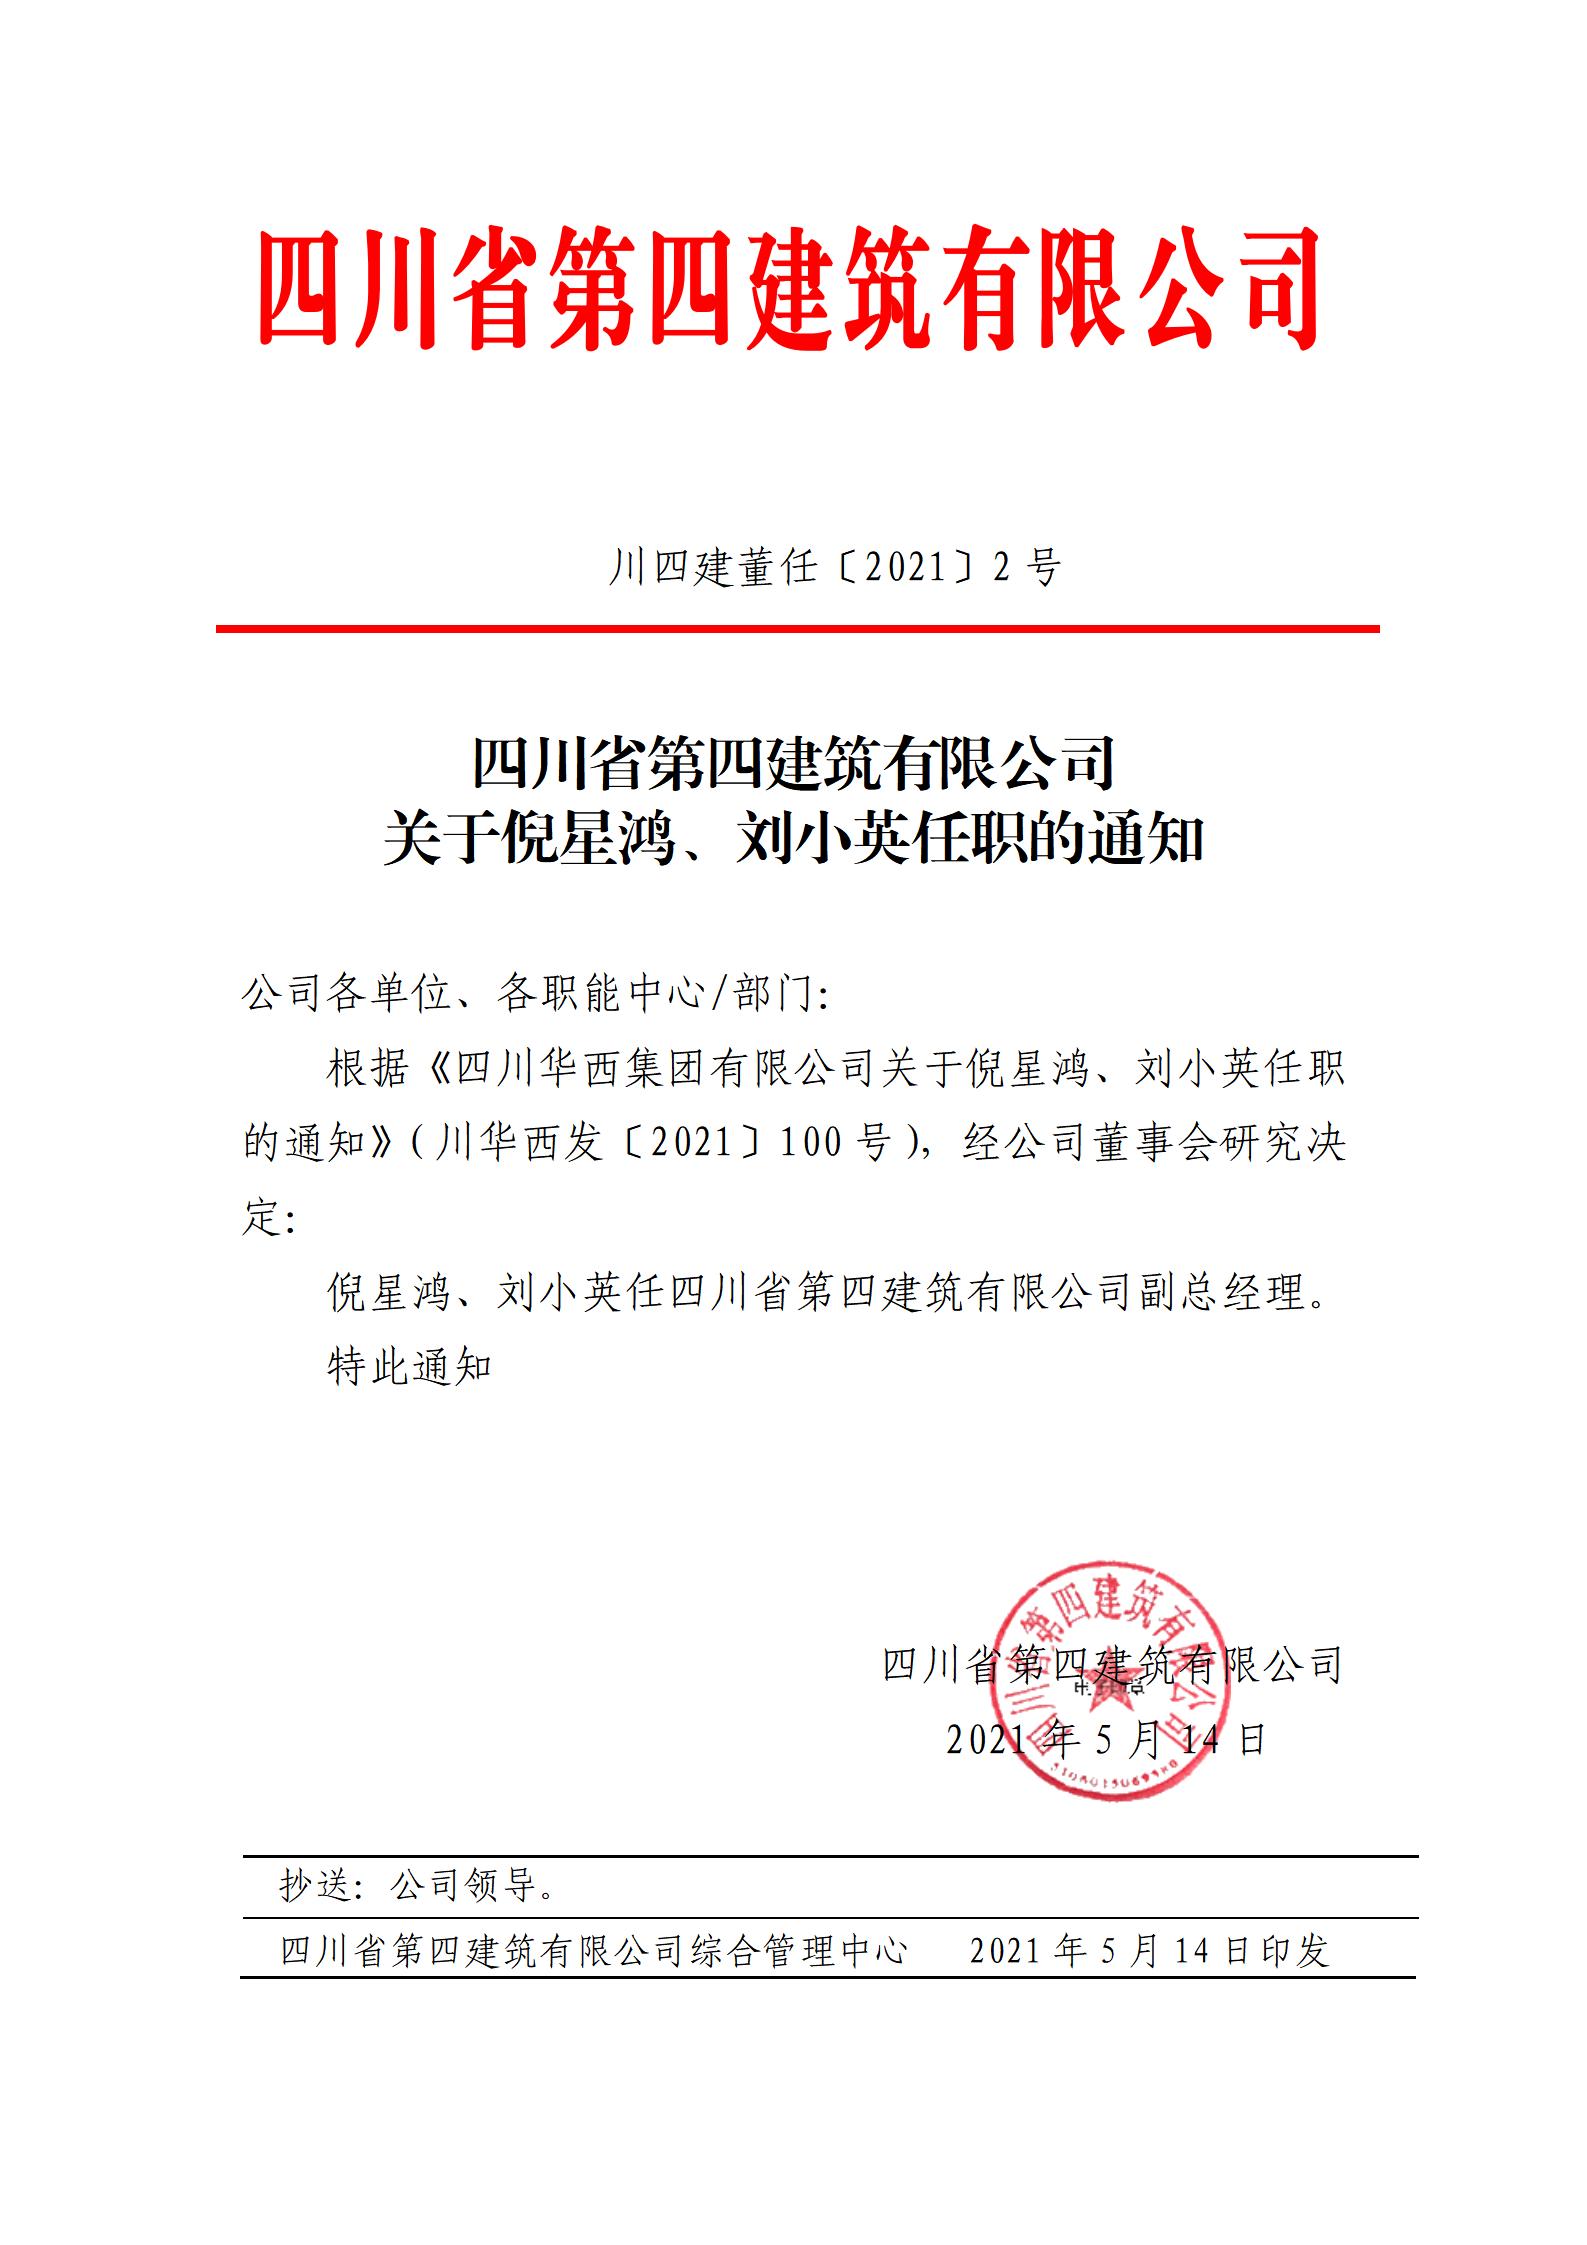 77779193永利(中国)集团有限公司关于倪星鸿、刘小英任职的通知_01